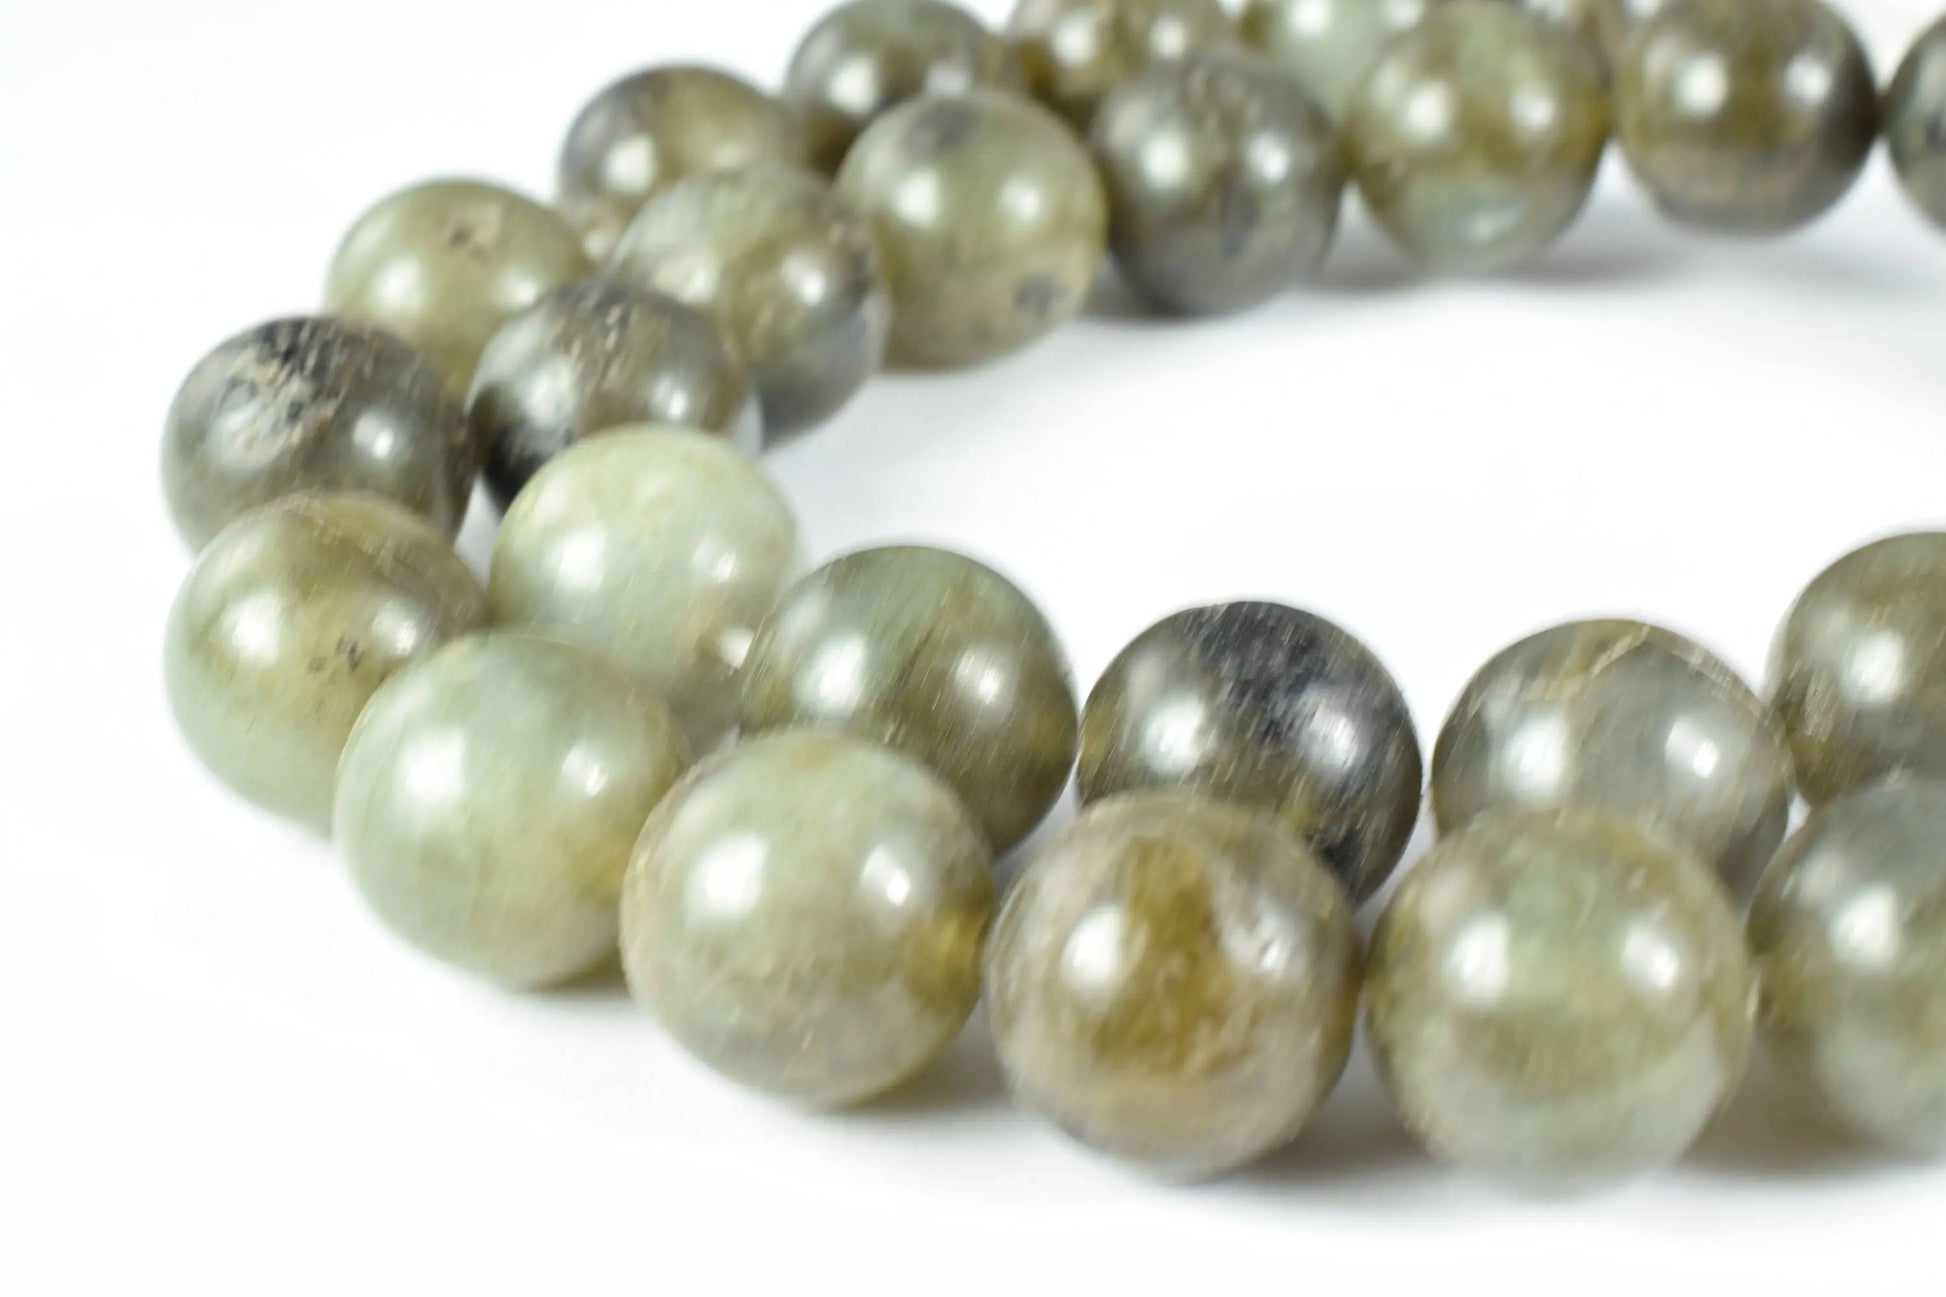 3mm/4mm/13mm Green Labrodorite Round Gemstone Beads,Ball Beads, Round Beads, Jewelry Making, Beading Supplies,natural stone,healing,chakra - BeadsFindingDepot